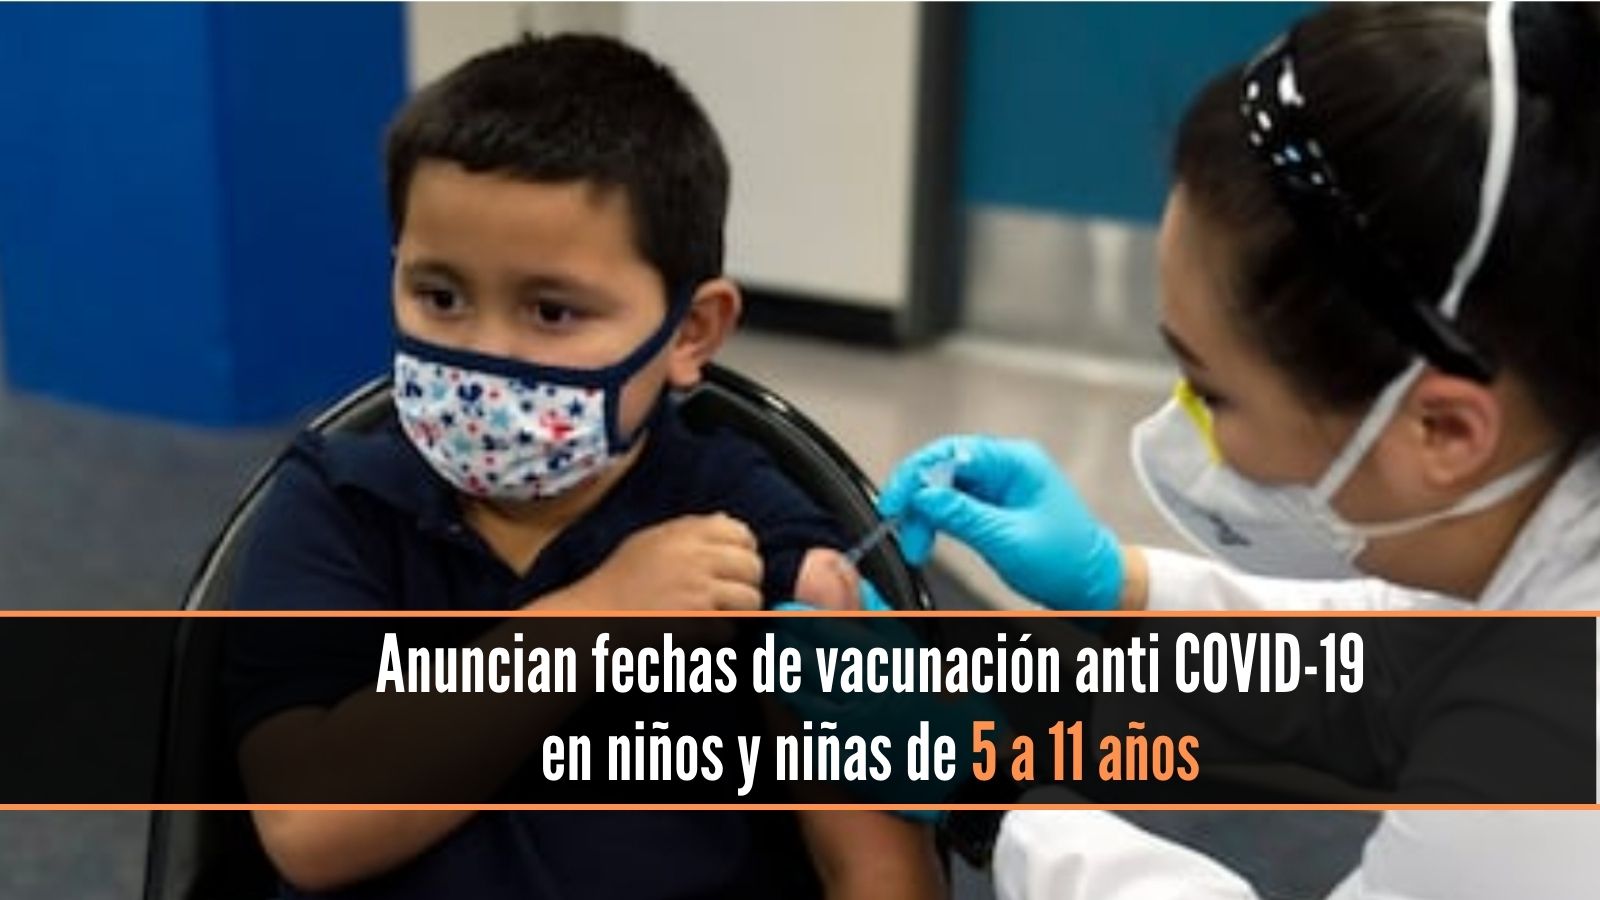 Anuncian fechas de vacunación anti COVID-19 en niños de 5 a 11 años